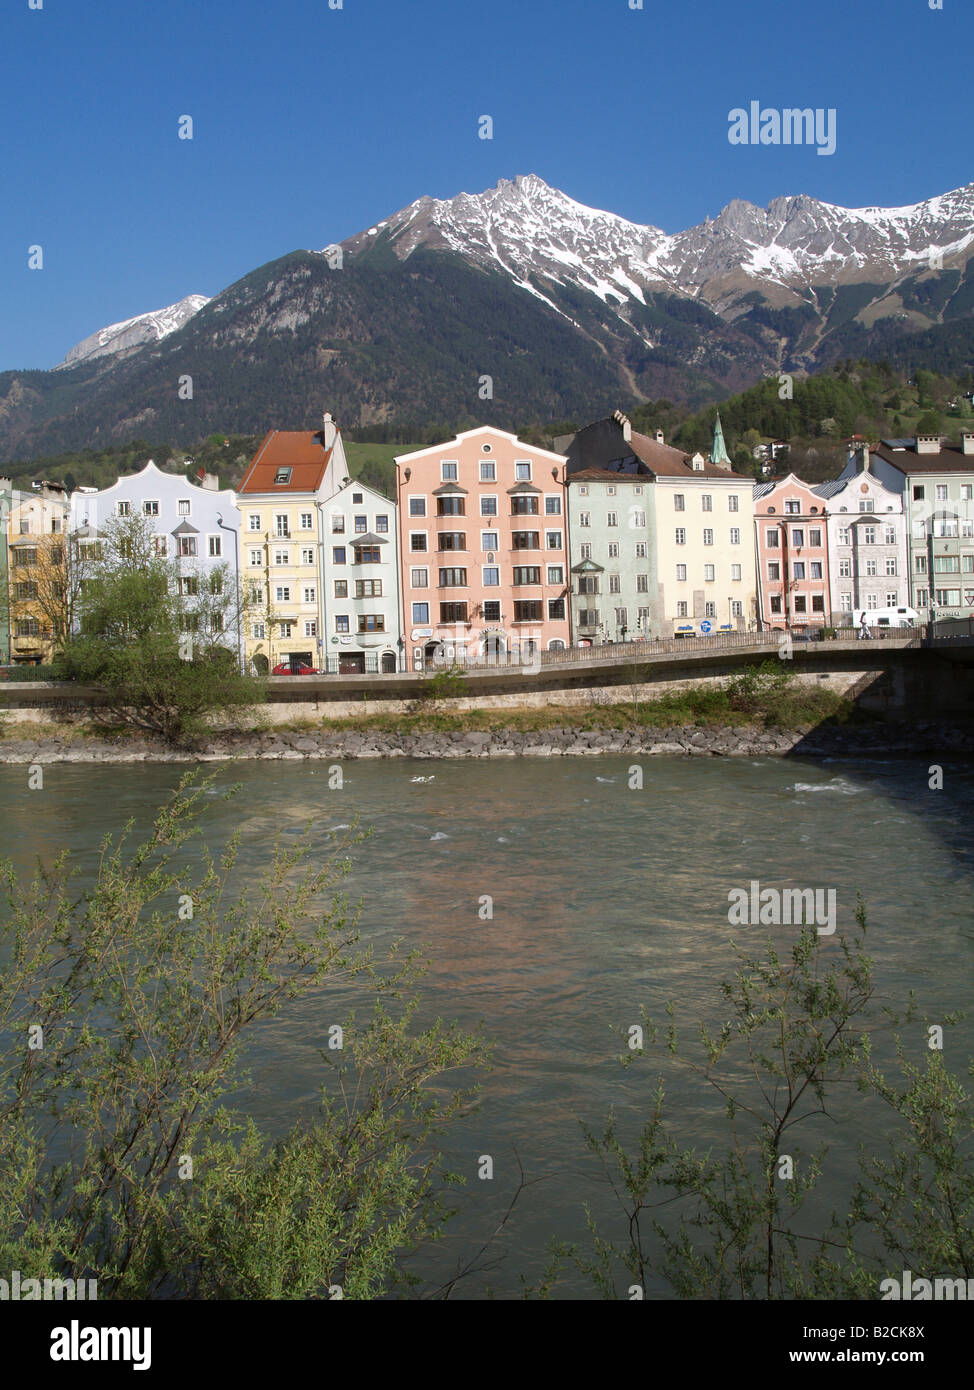 Innsbruck, old city center, mountain Nordkette, river Inn Stock Photo